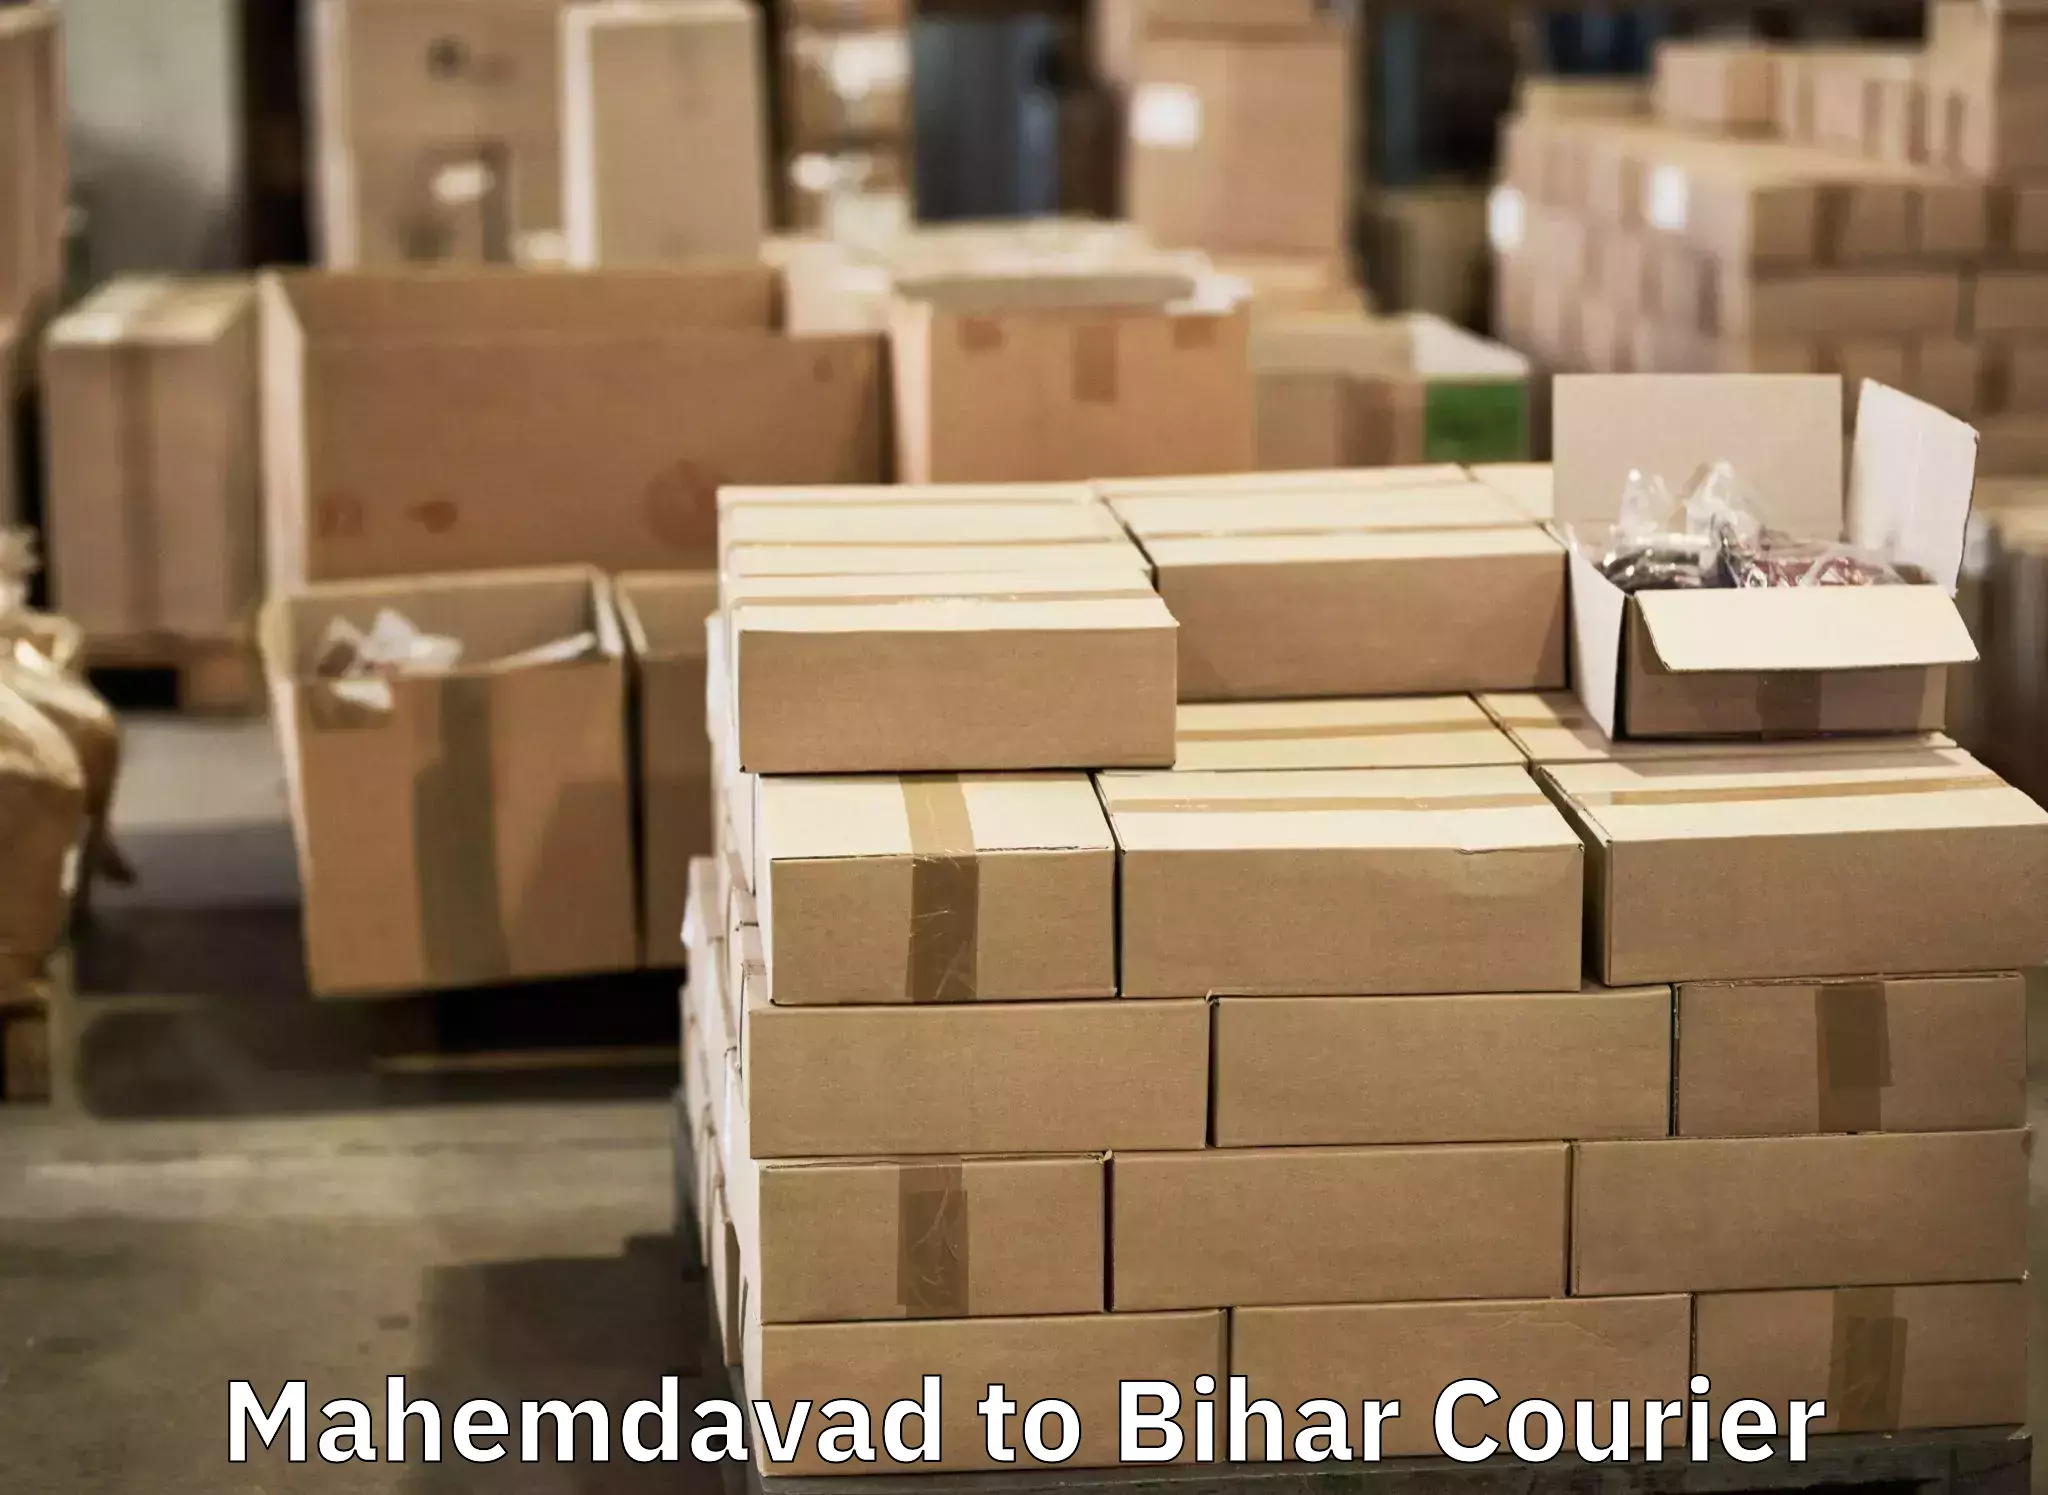 Holiday season luggage delivery Mahemdavad to Baniapur